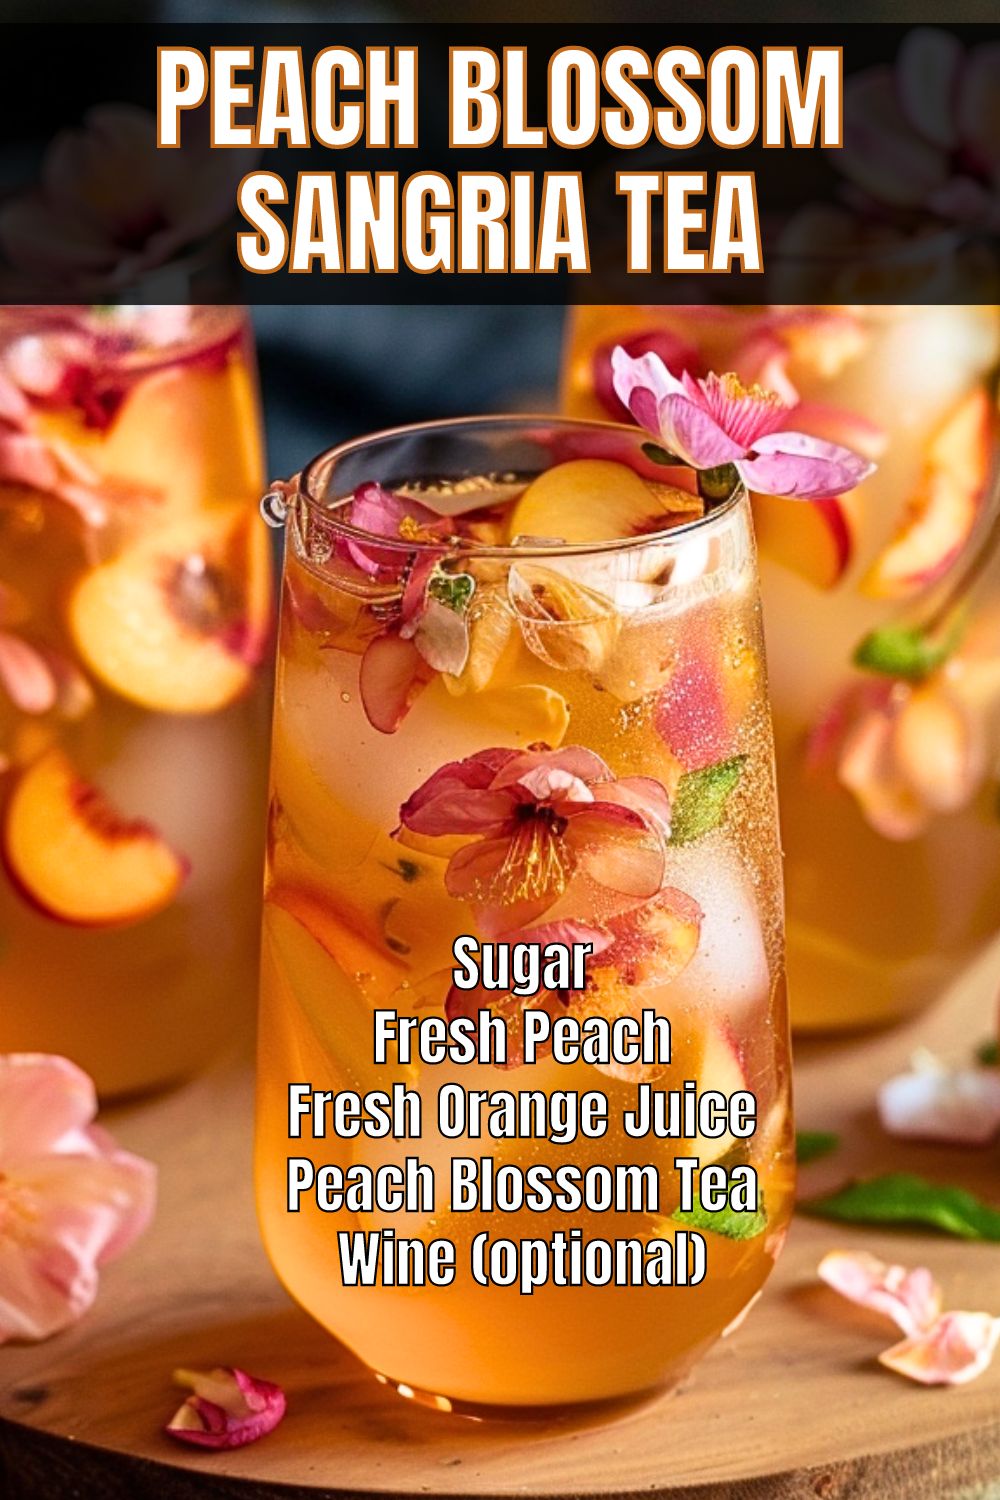 Peach Blossom Sangria Tea Recipw